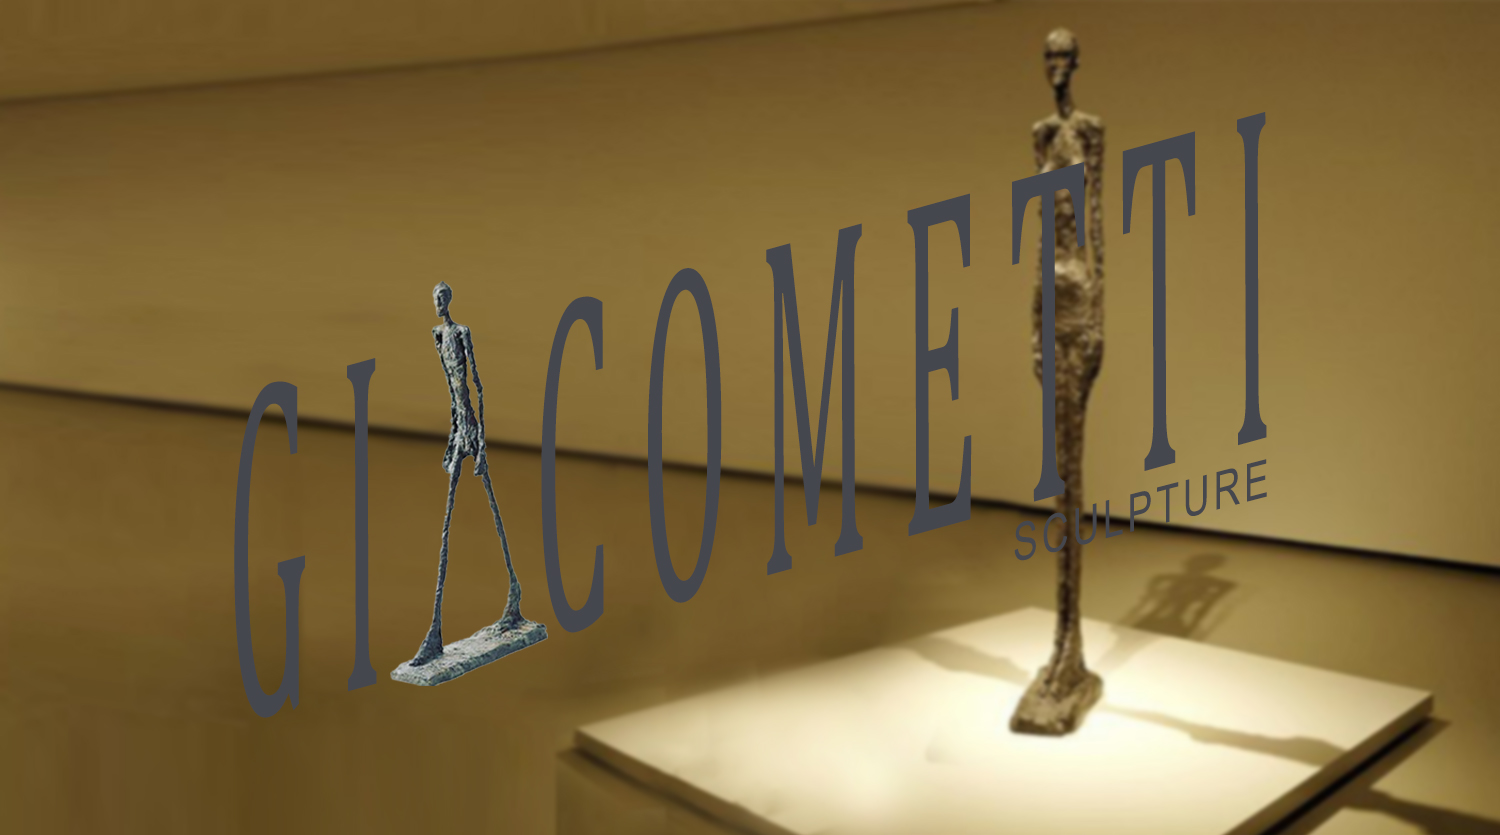 Alberto Giacometti Sculptures